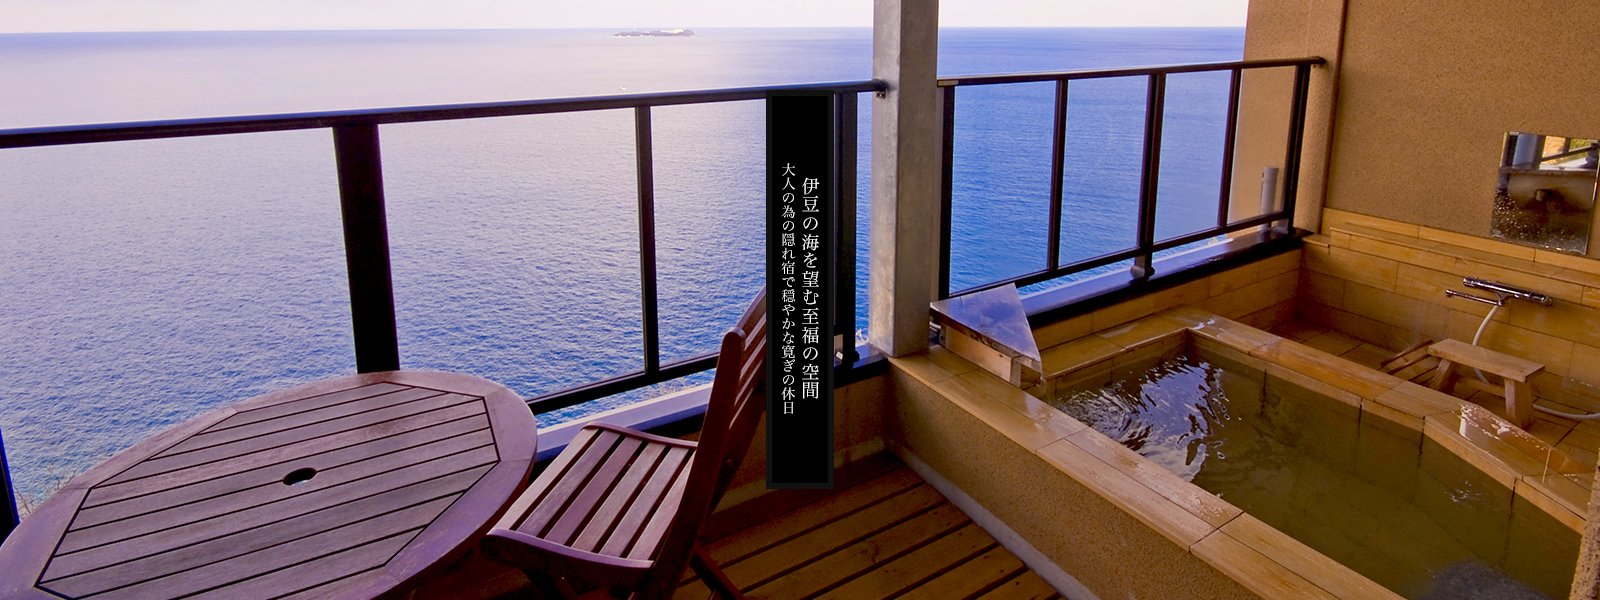 露天風呂付き客室で伊豆の海を望む至福の空間